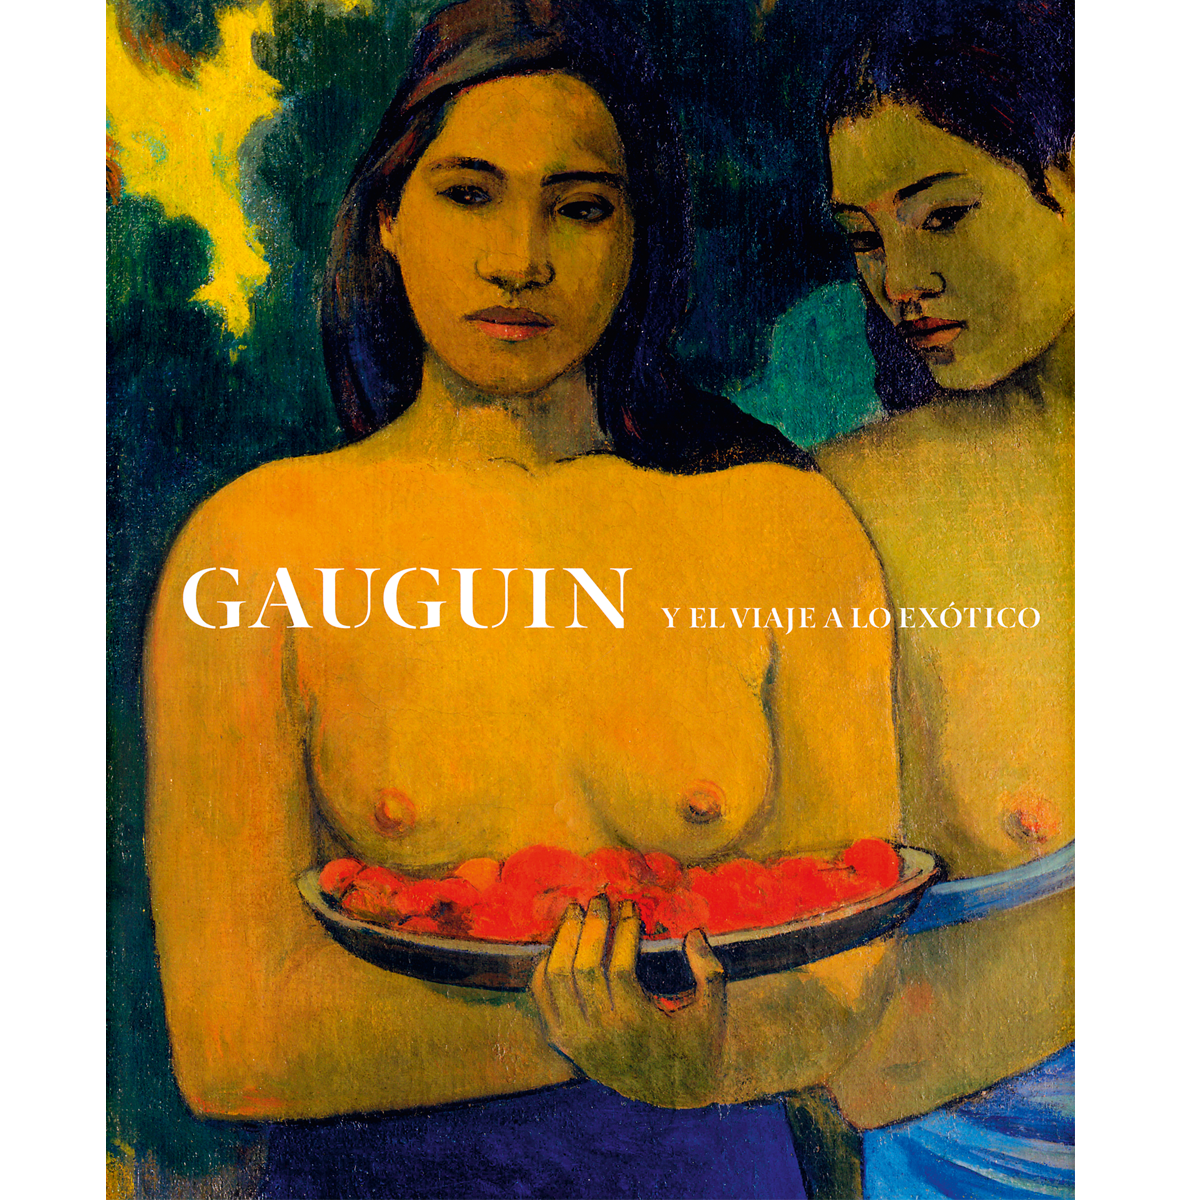 Gauguin y el viaje a lo exótico